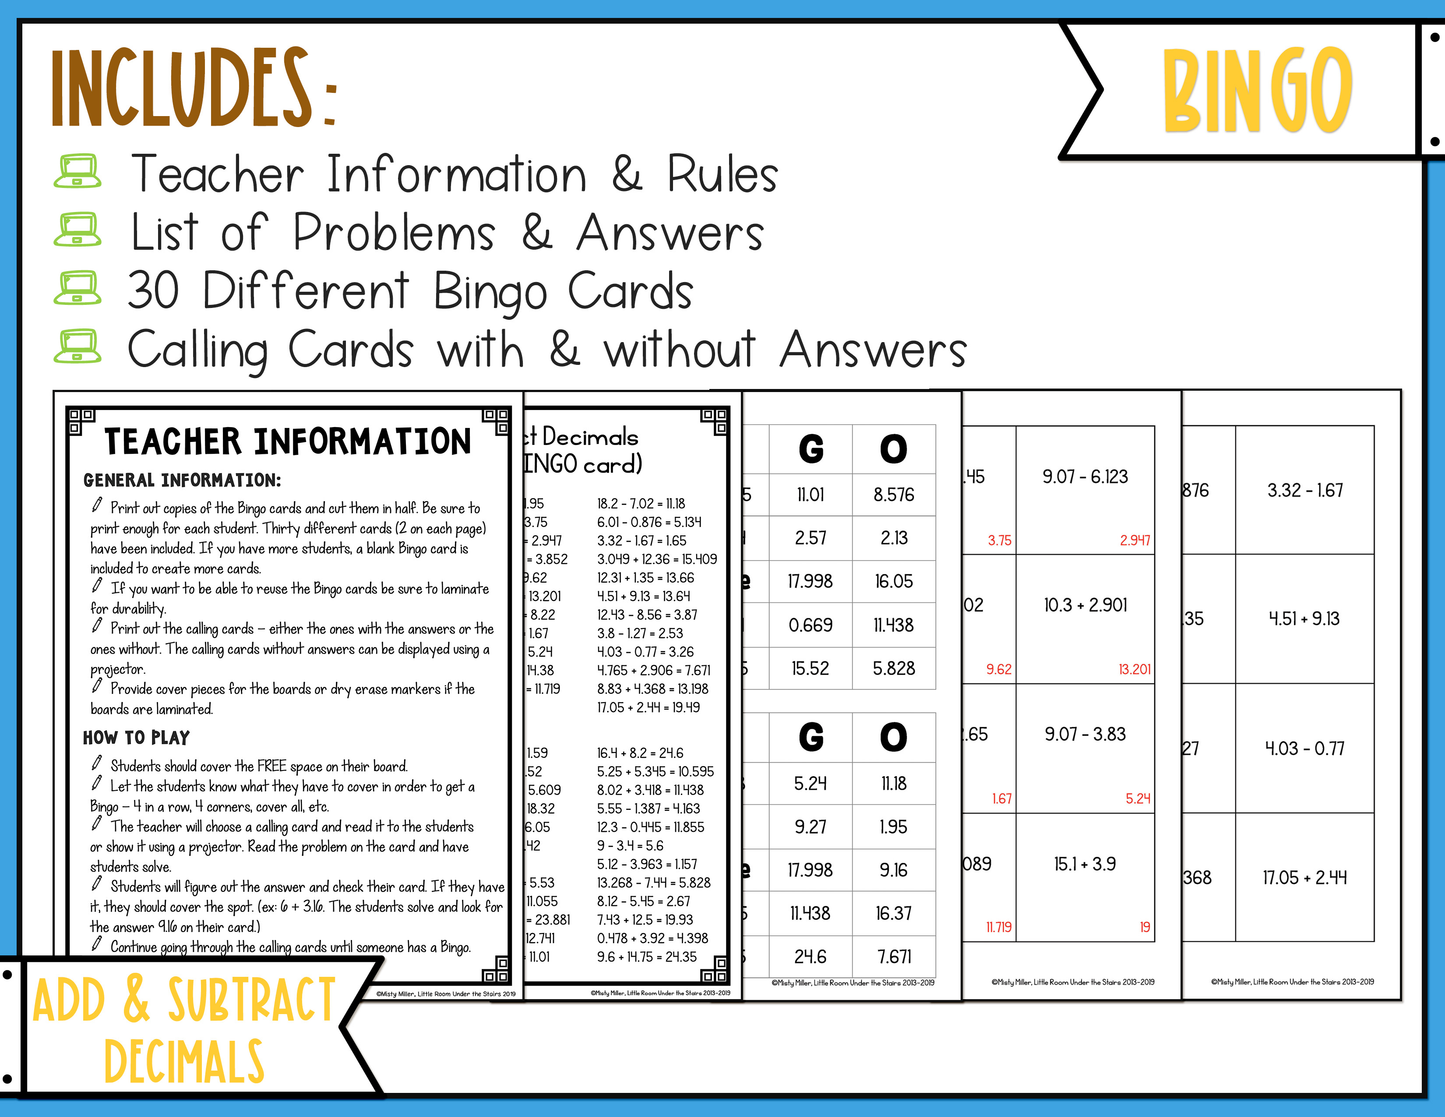 Adding and Subtracting Decimals BINGO Math Game